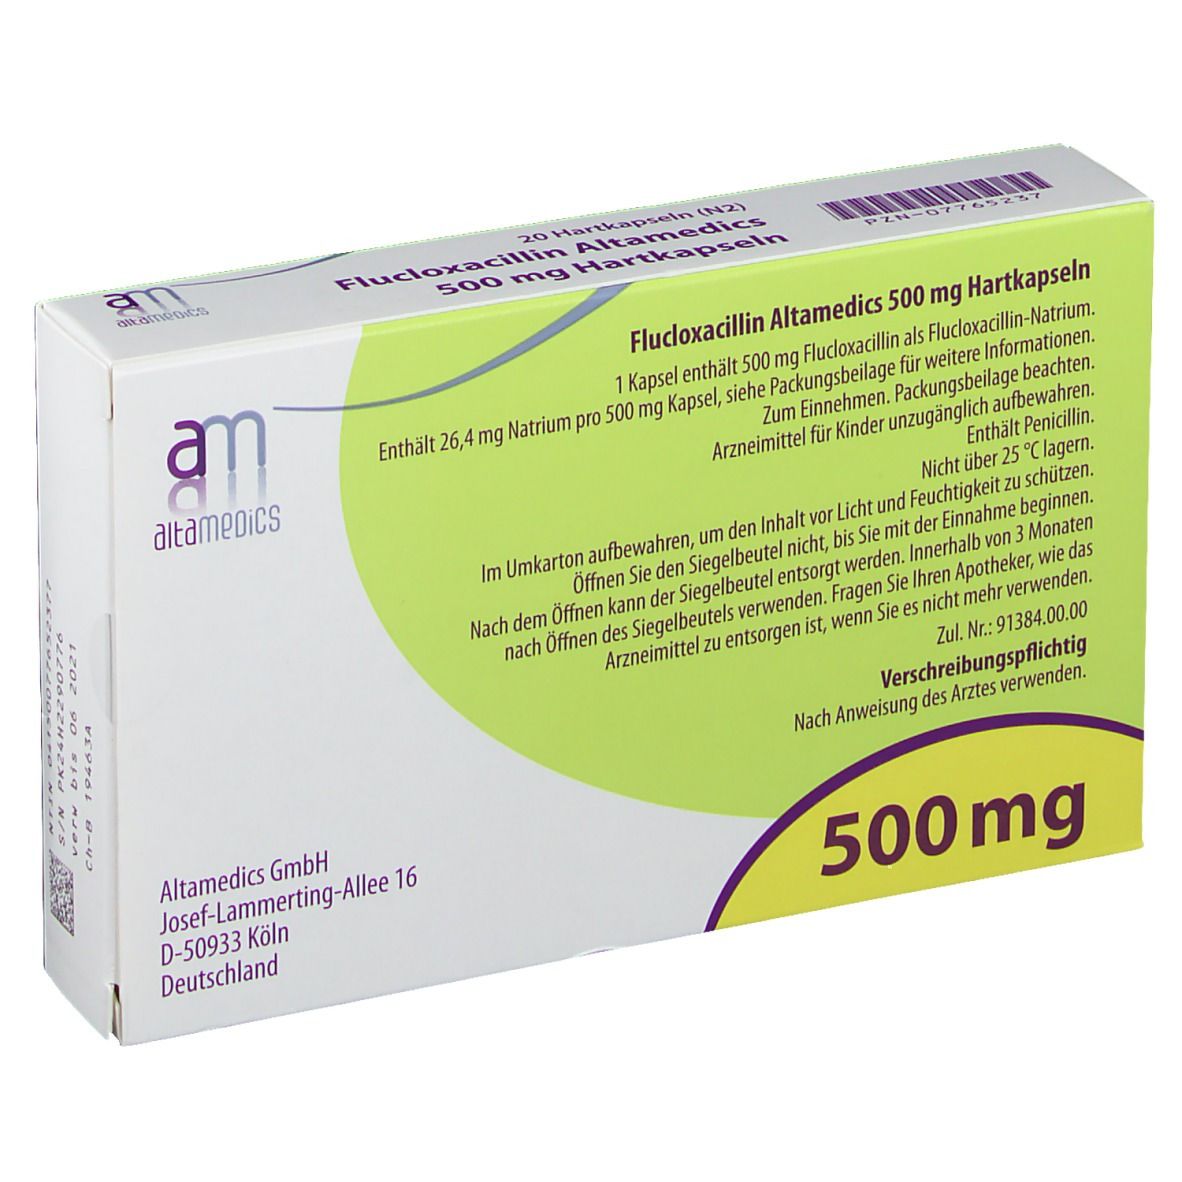 Flucloxacillin Altamedics 500 mg